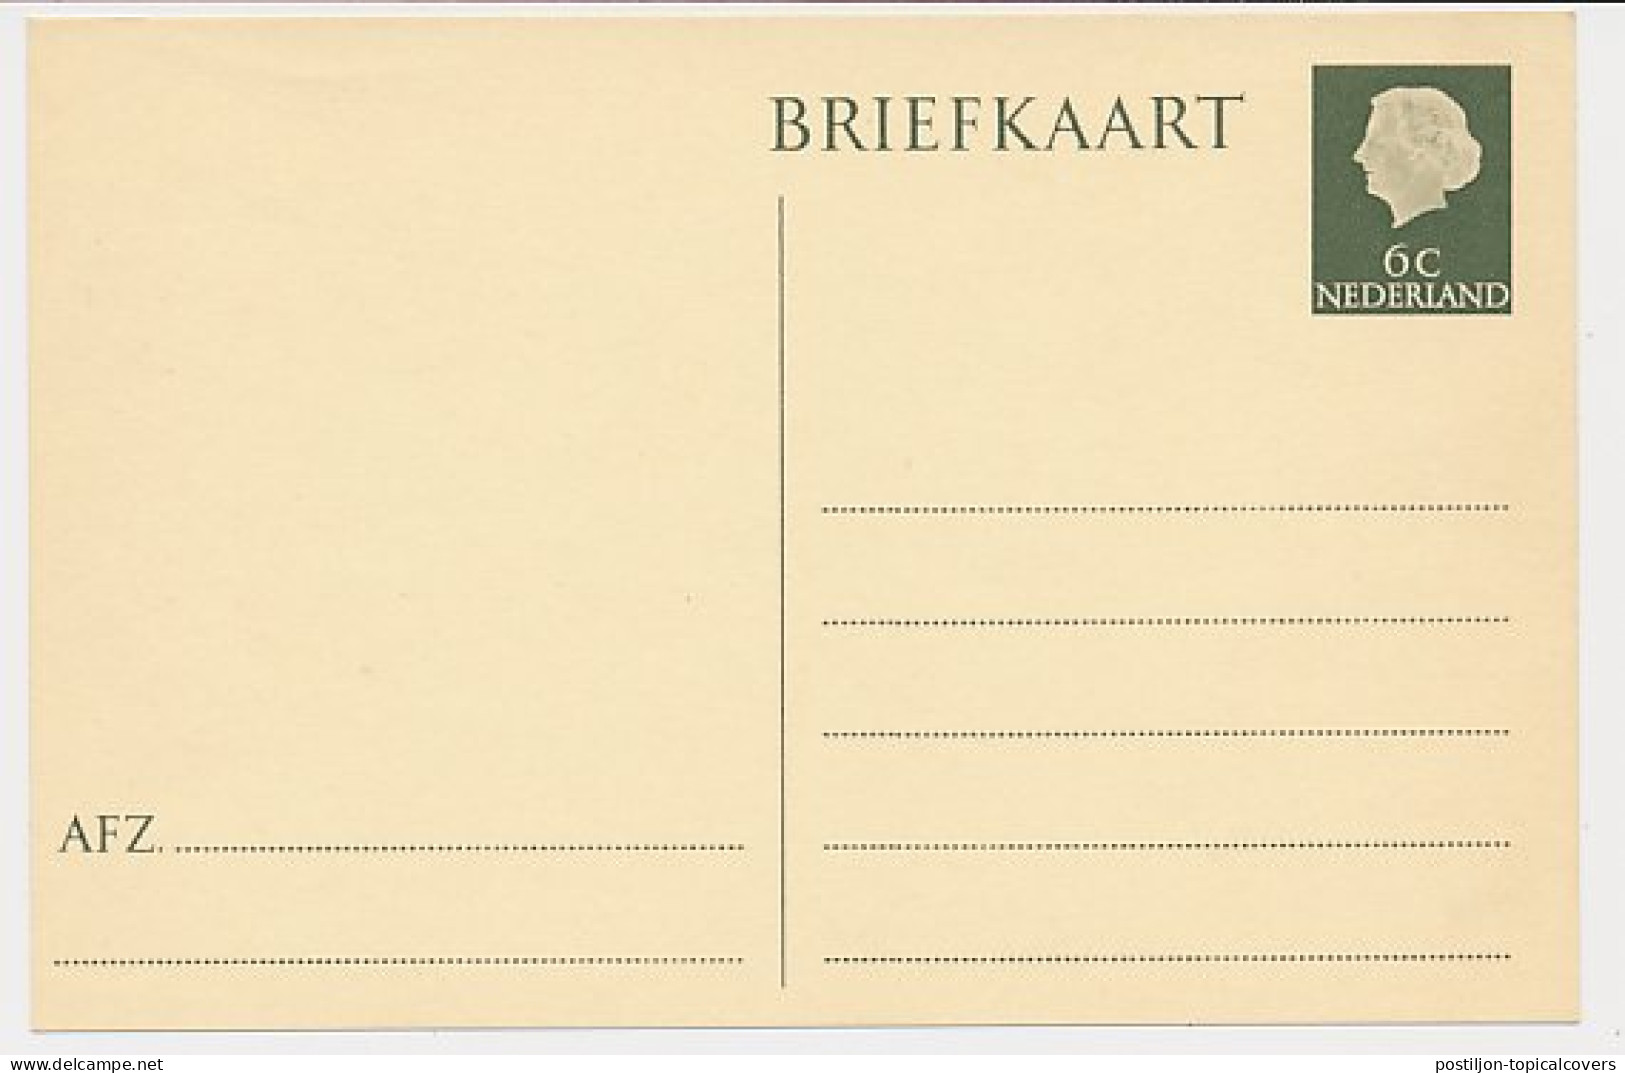 Briefkaart G. 313 - Ganzsachen